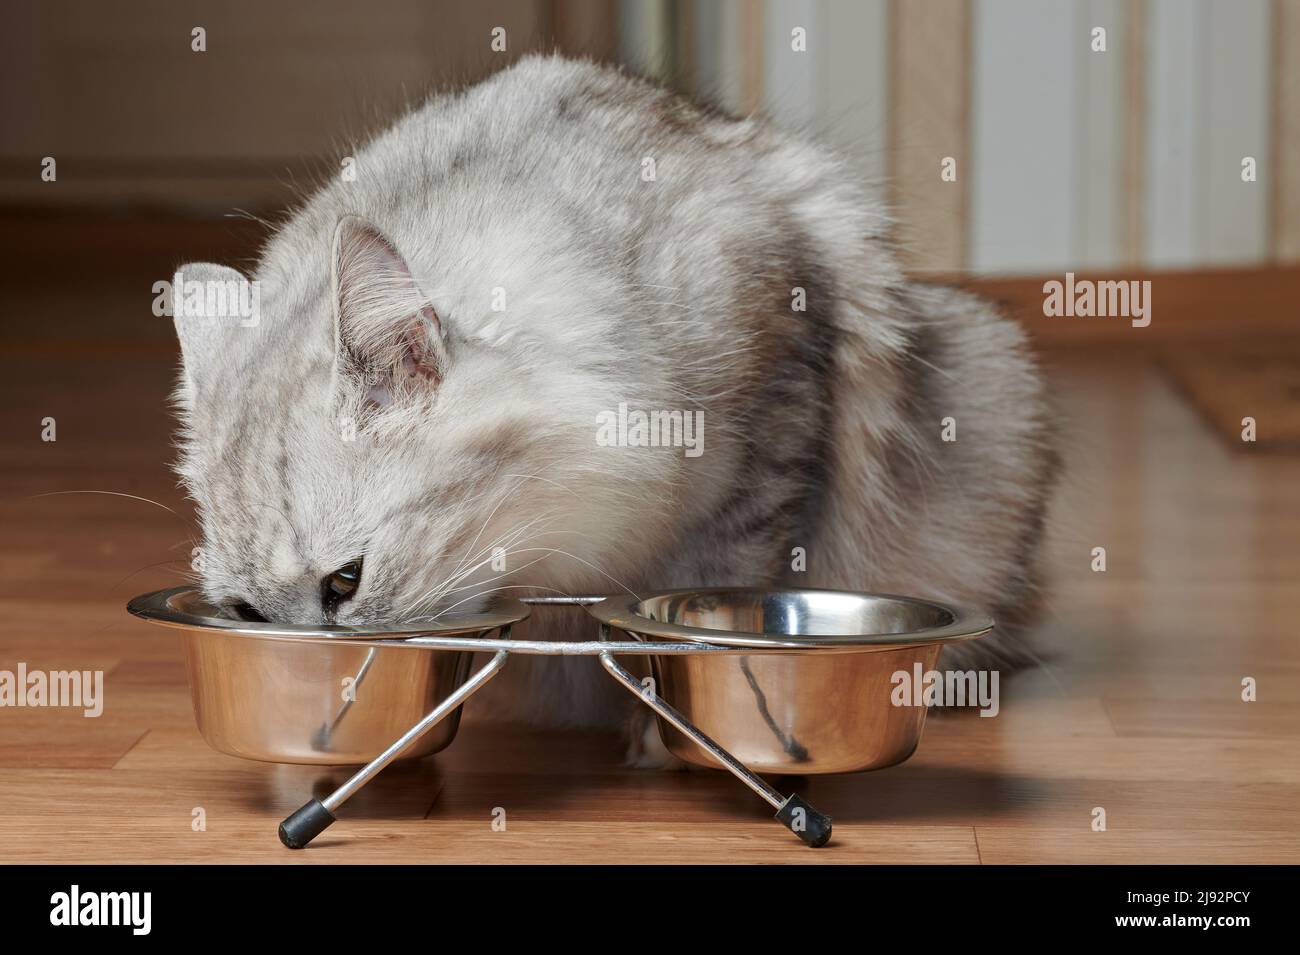 Thème de l'alimentation des animaux de compagnie de chat. Chaton gris manger à partir d'une assiette en métal Banque D'Images